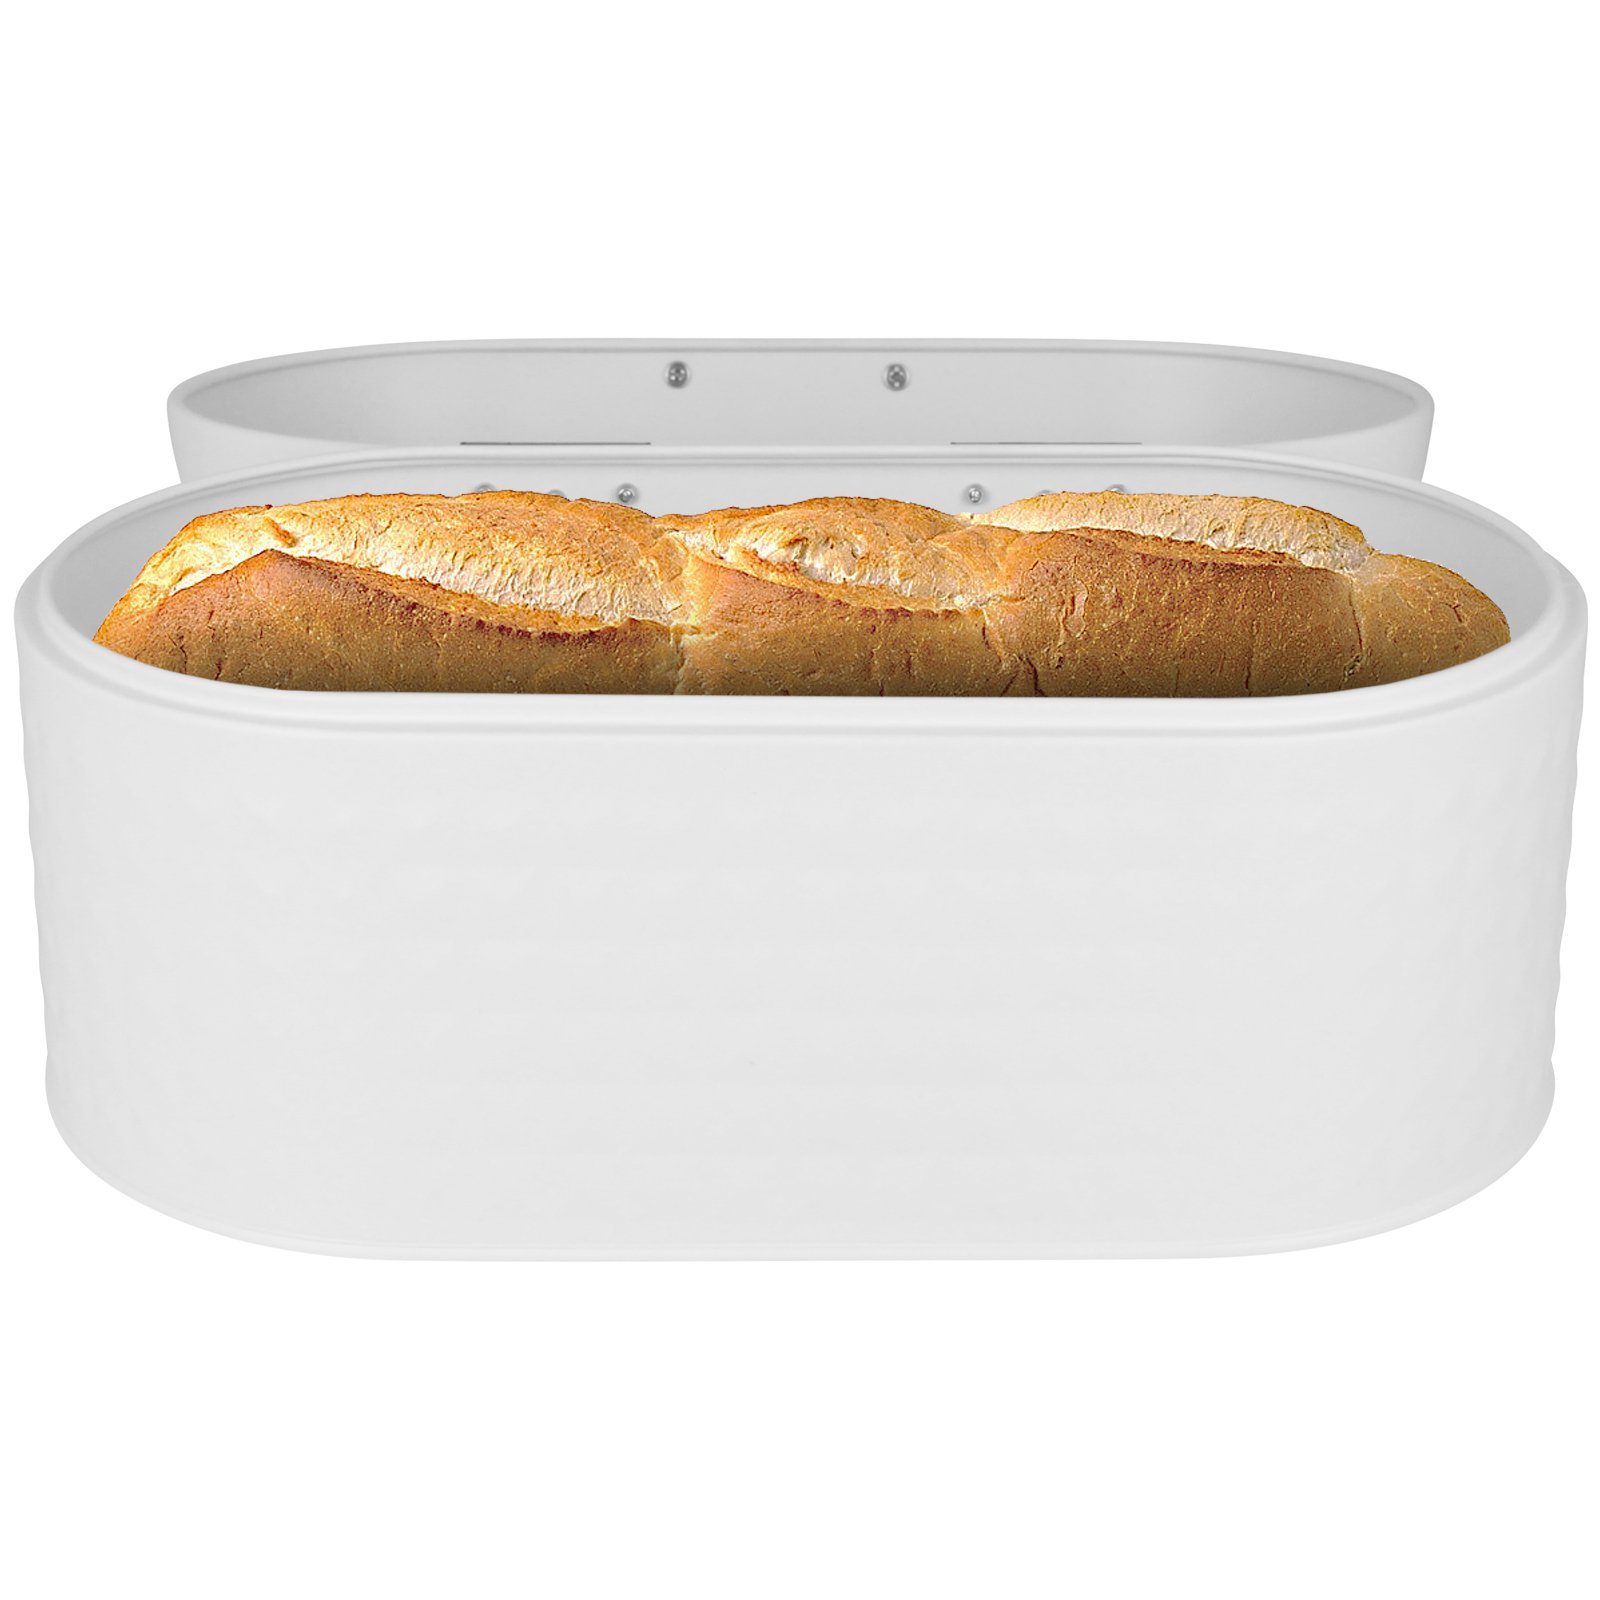 Brot Matt Weiß Brotbox Brotkasten Backwaren Aufbewahrungsbehälter, Kasten Brotkiste Box Aufbewahrung Farbwahl Toast Hatex Brotbehälter Brotaufbewahrung